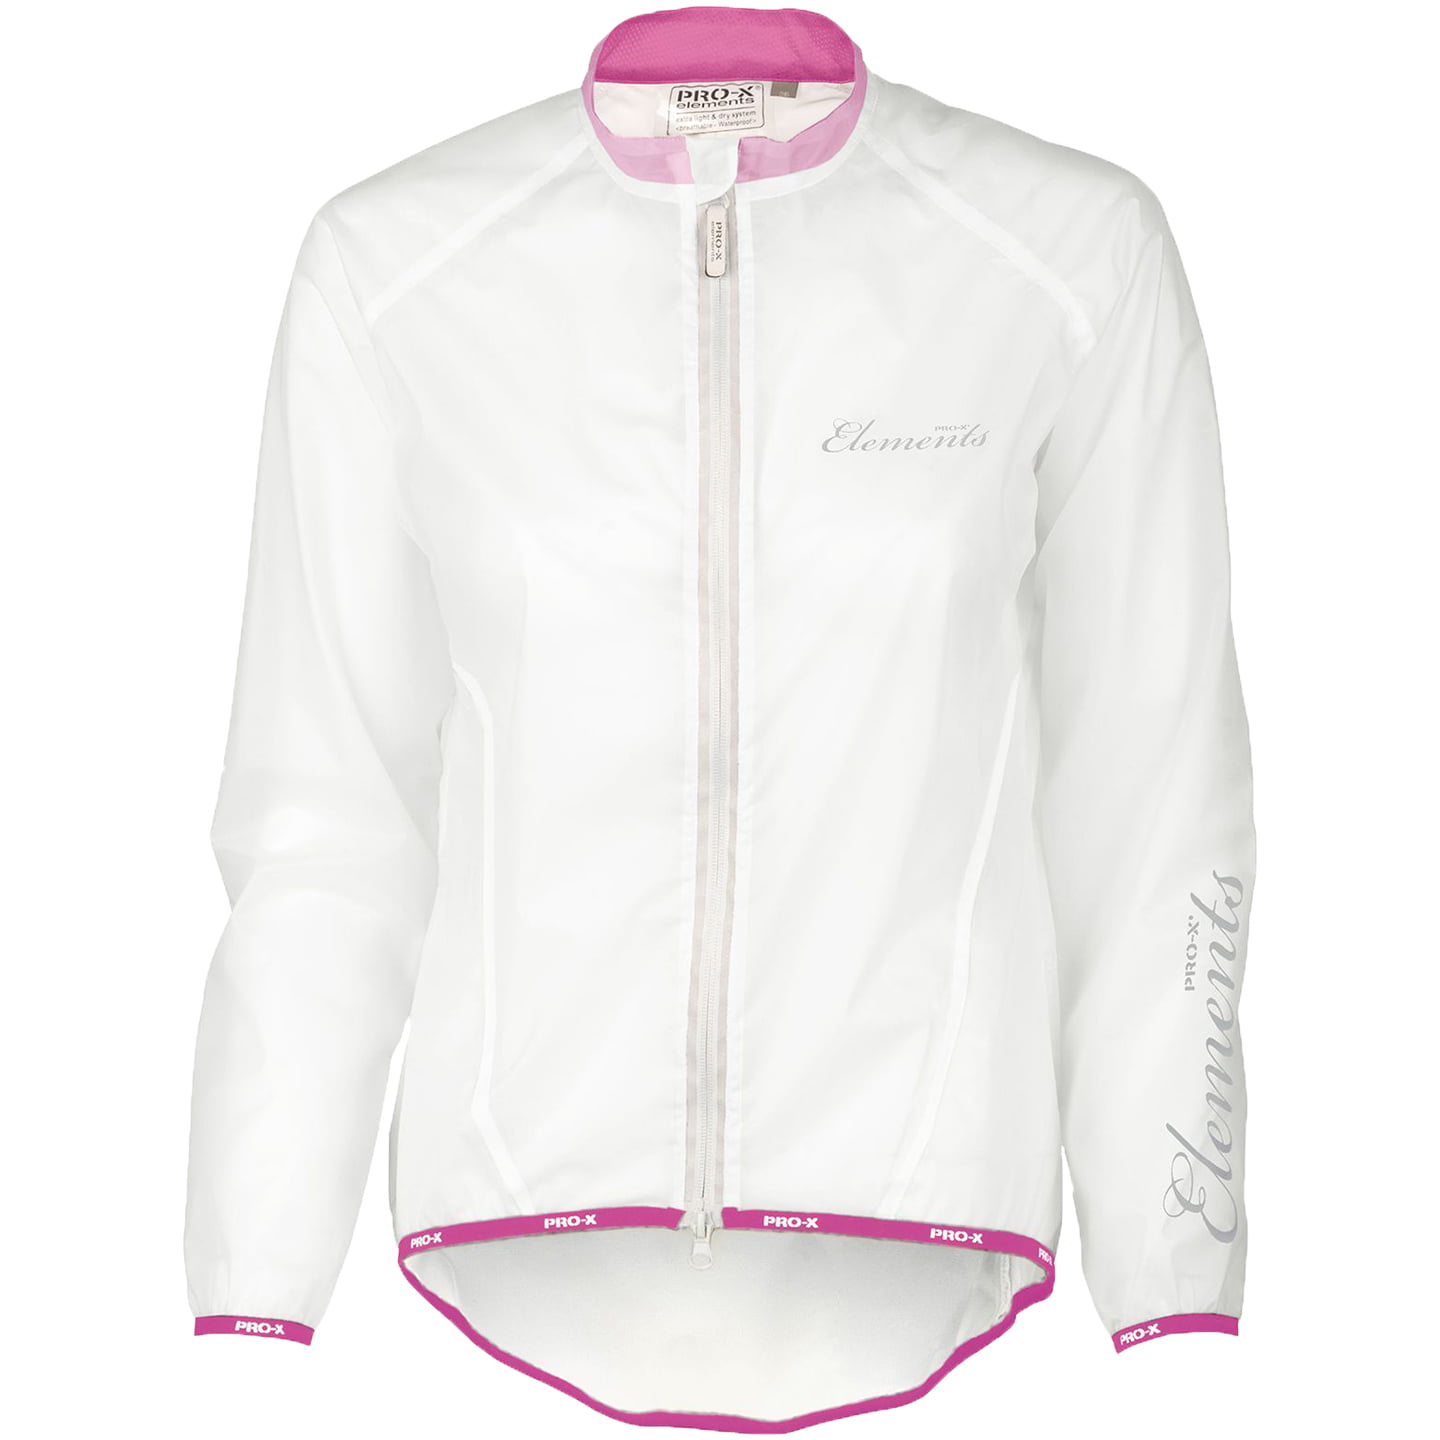 PRO-X Women’s Rain Jacket Giulia Women’s Waterproof Jacket, size 36, Cycle jacket, Rainwear